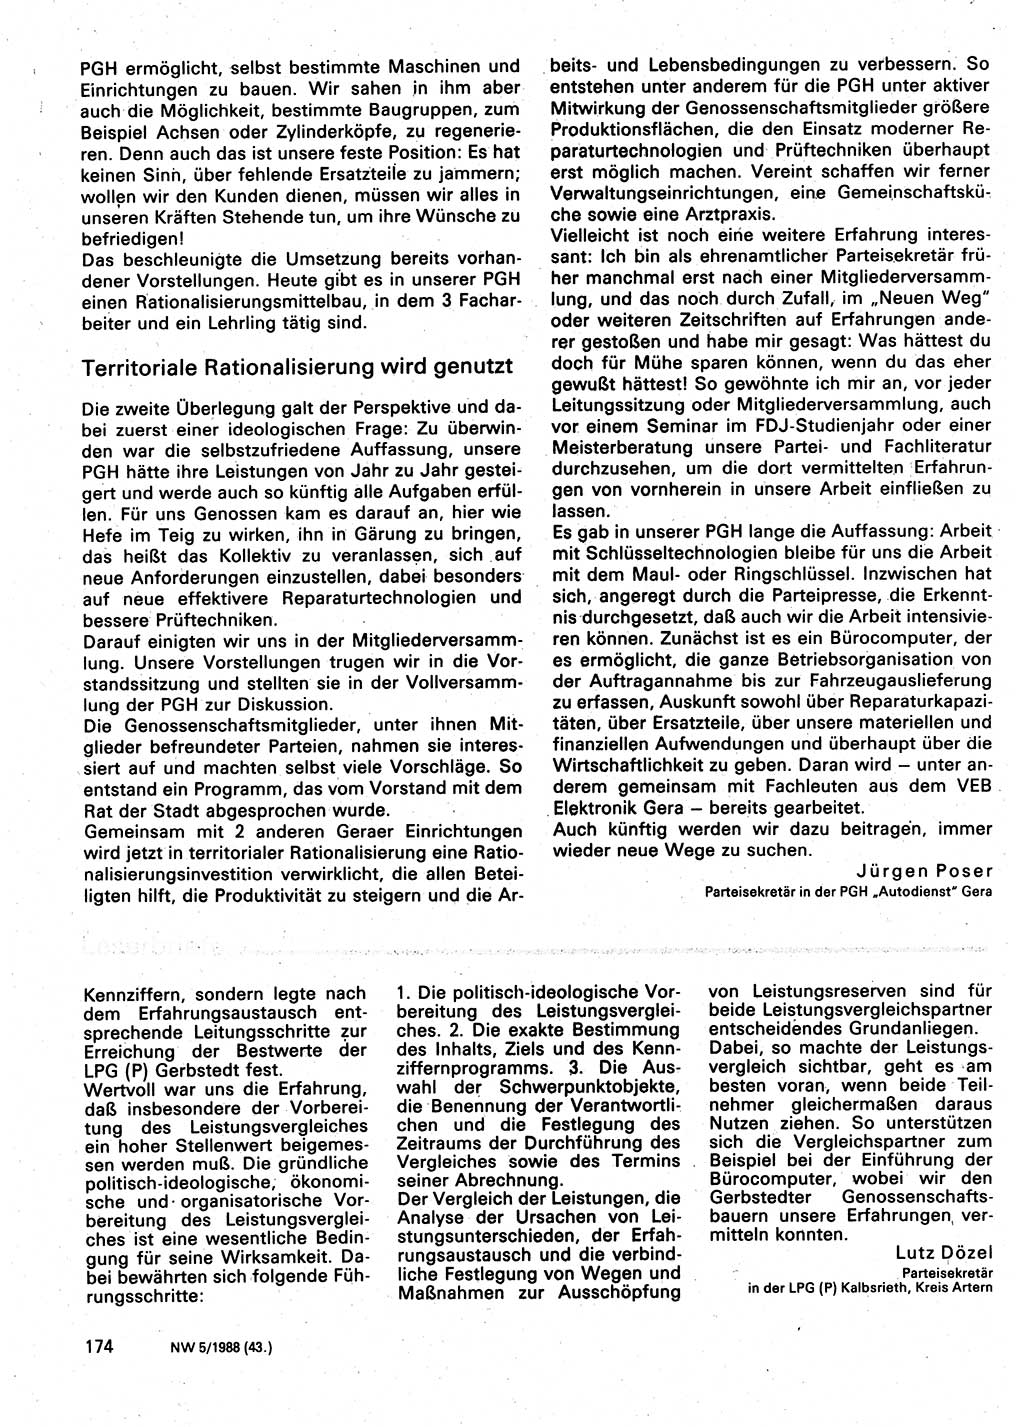 Neuer Weg (NW), Organ des Zentralkomitees (ZK) der SED (Sozialistische Einheitspartei Deutschlands) für Fragen des Parteilebens, 43. Jahrgang [Deutsche Demokratische Republik (DDR)] 1988, Seite 174 (NW ZK SED DDR 1988, S. 174)